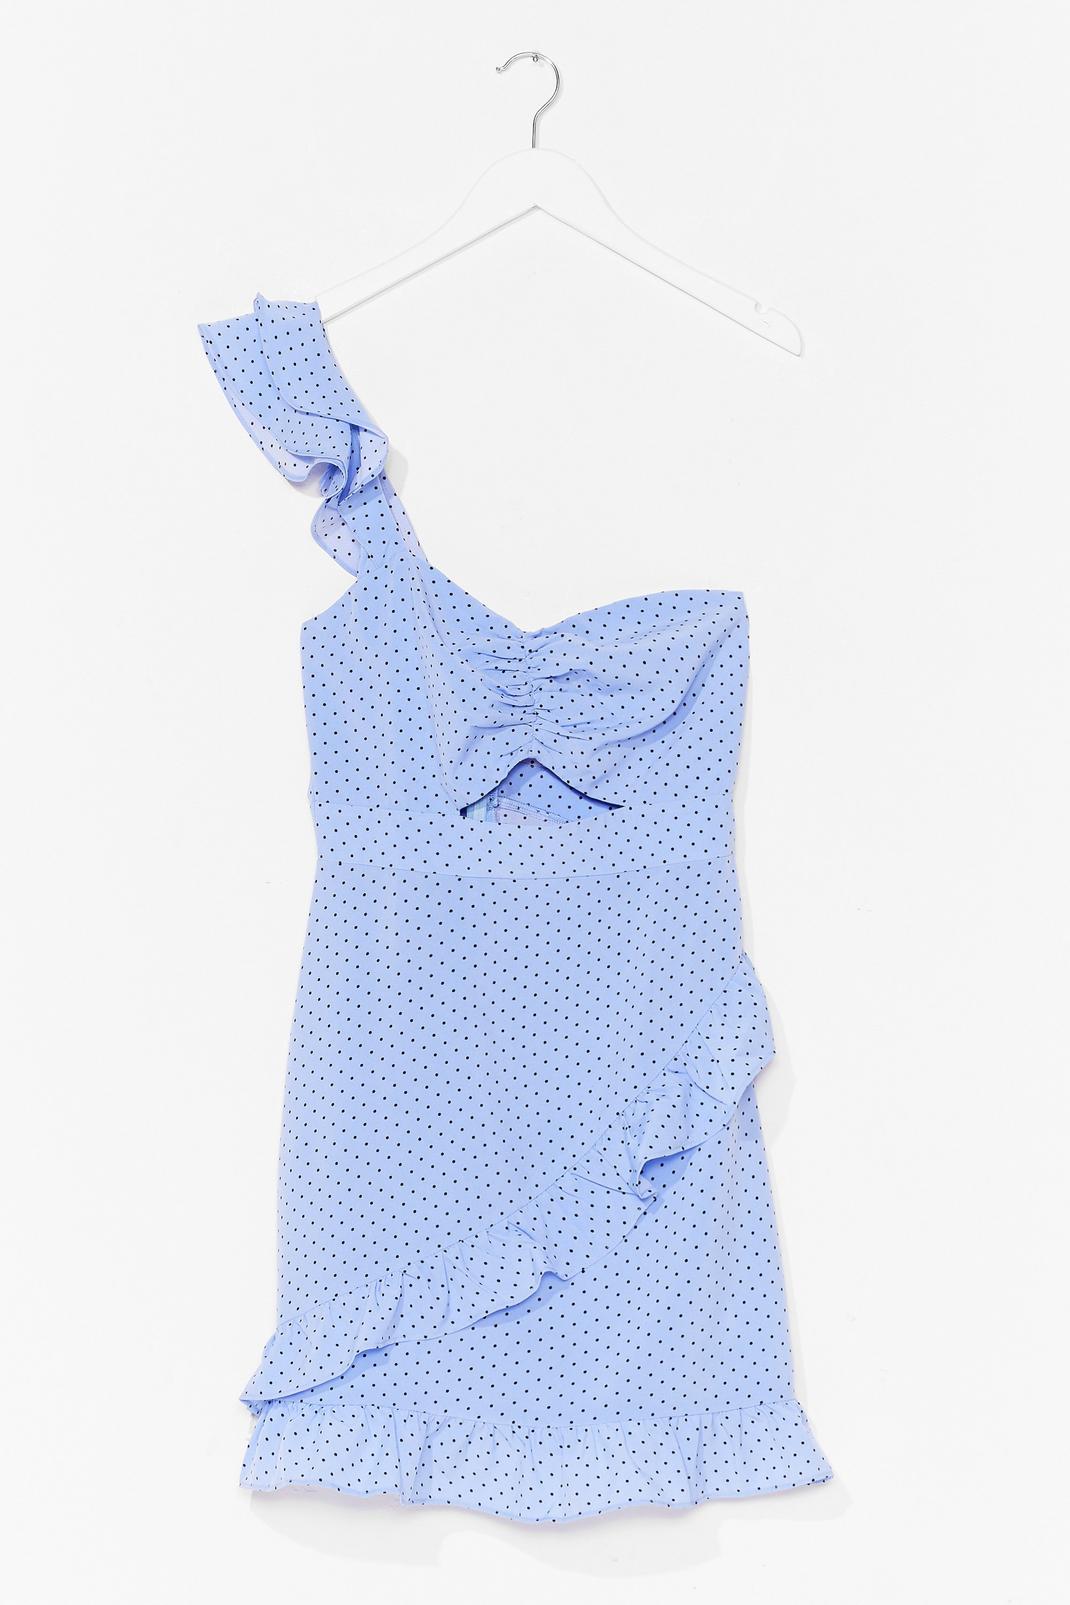 Blue Polka Dot One Shoulder Fitted Mini Dress image number 1